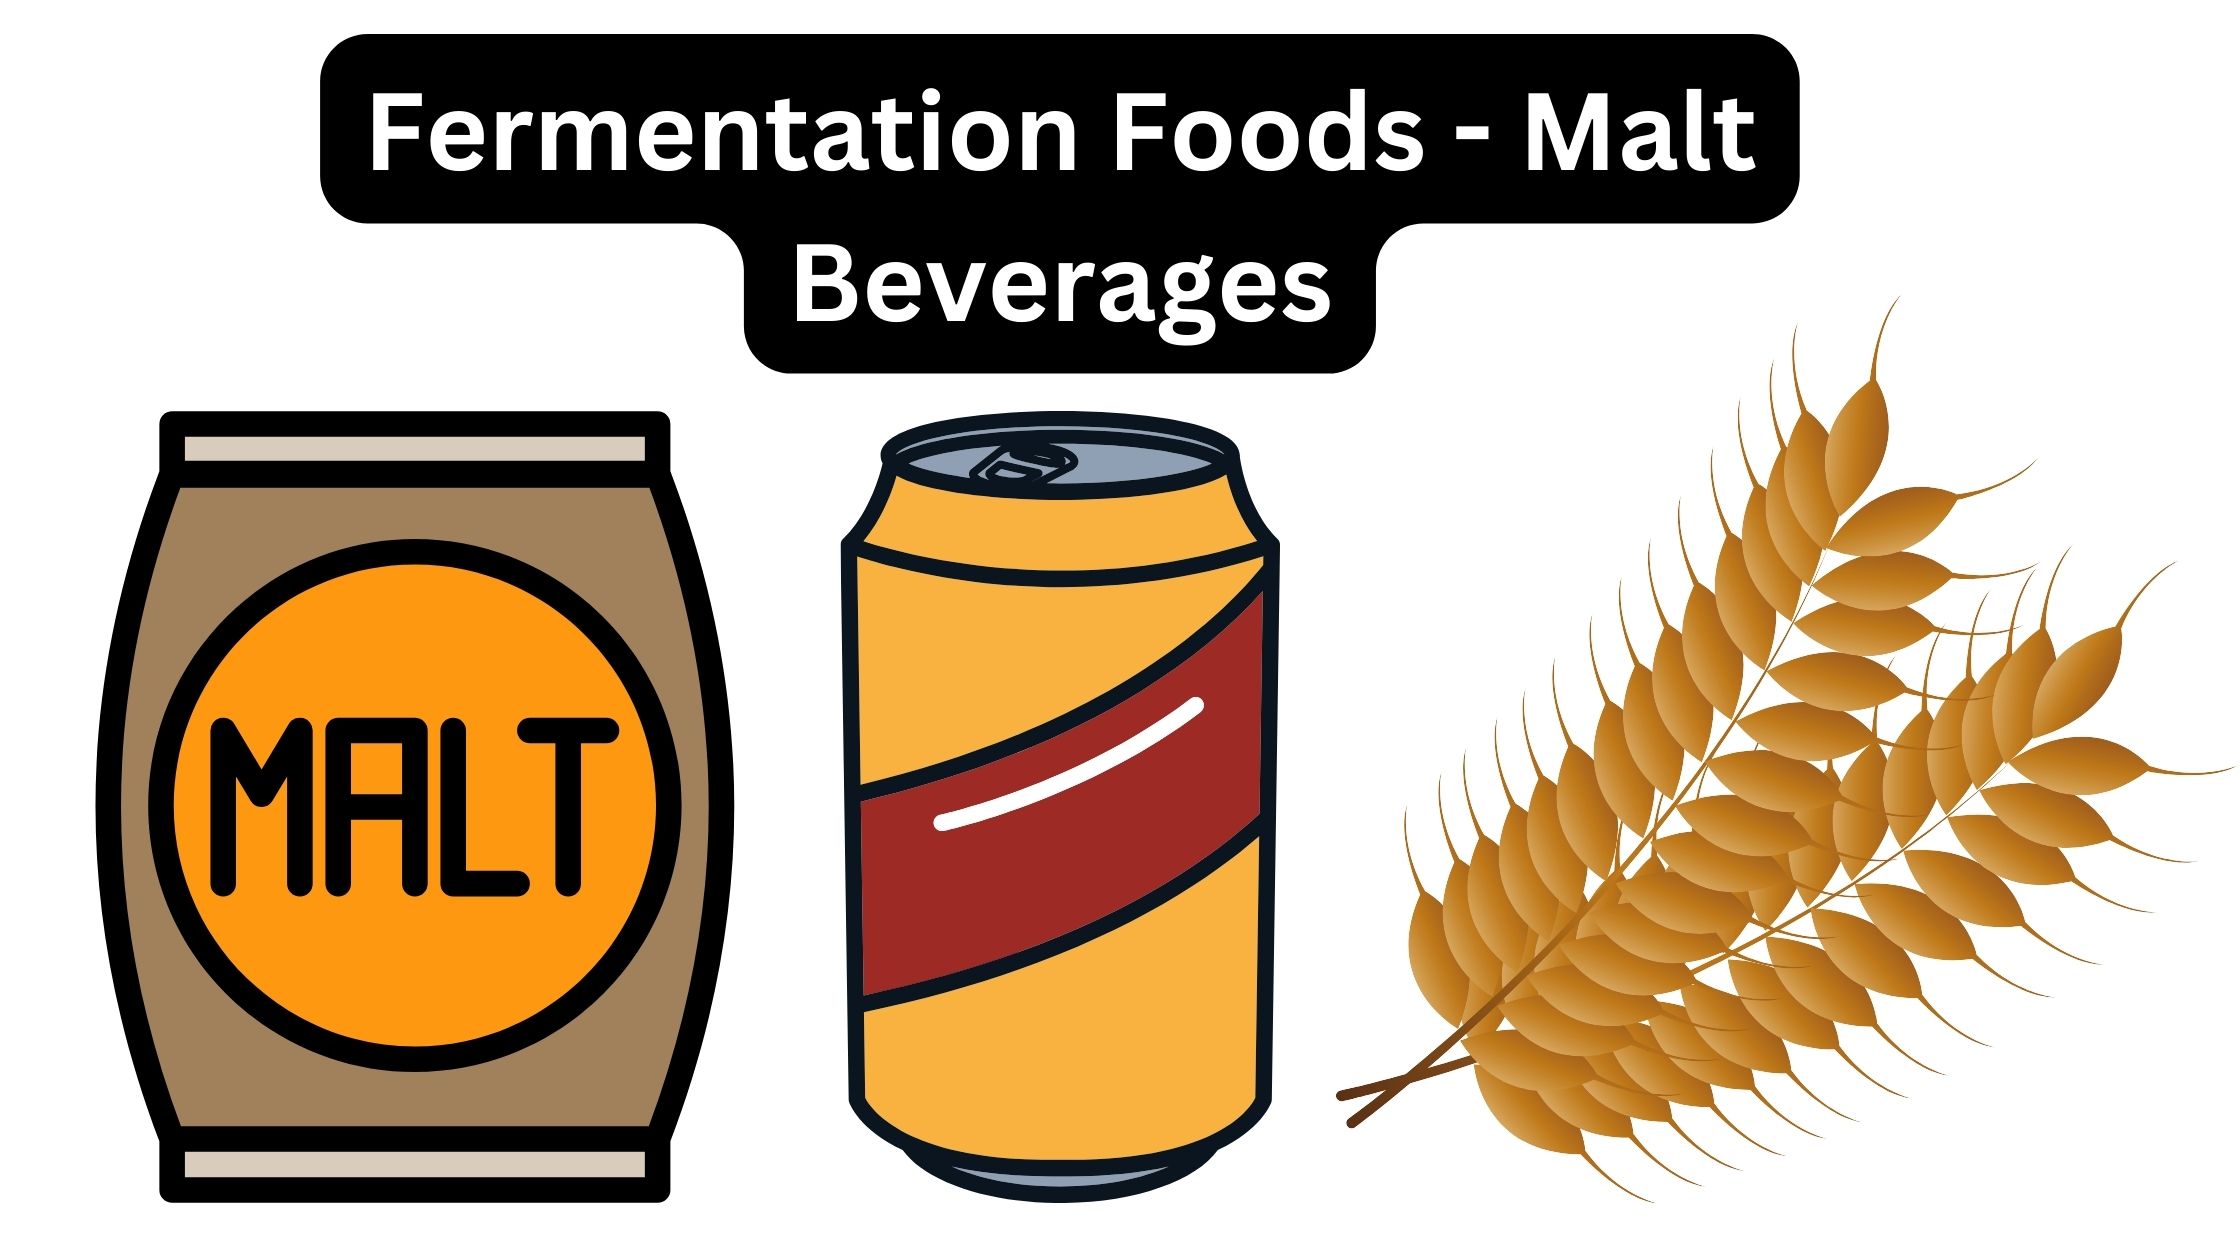 Fermentation Foods - Malt Beverages